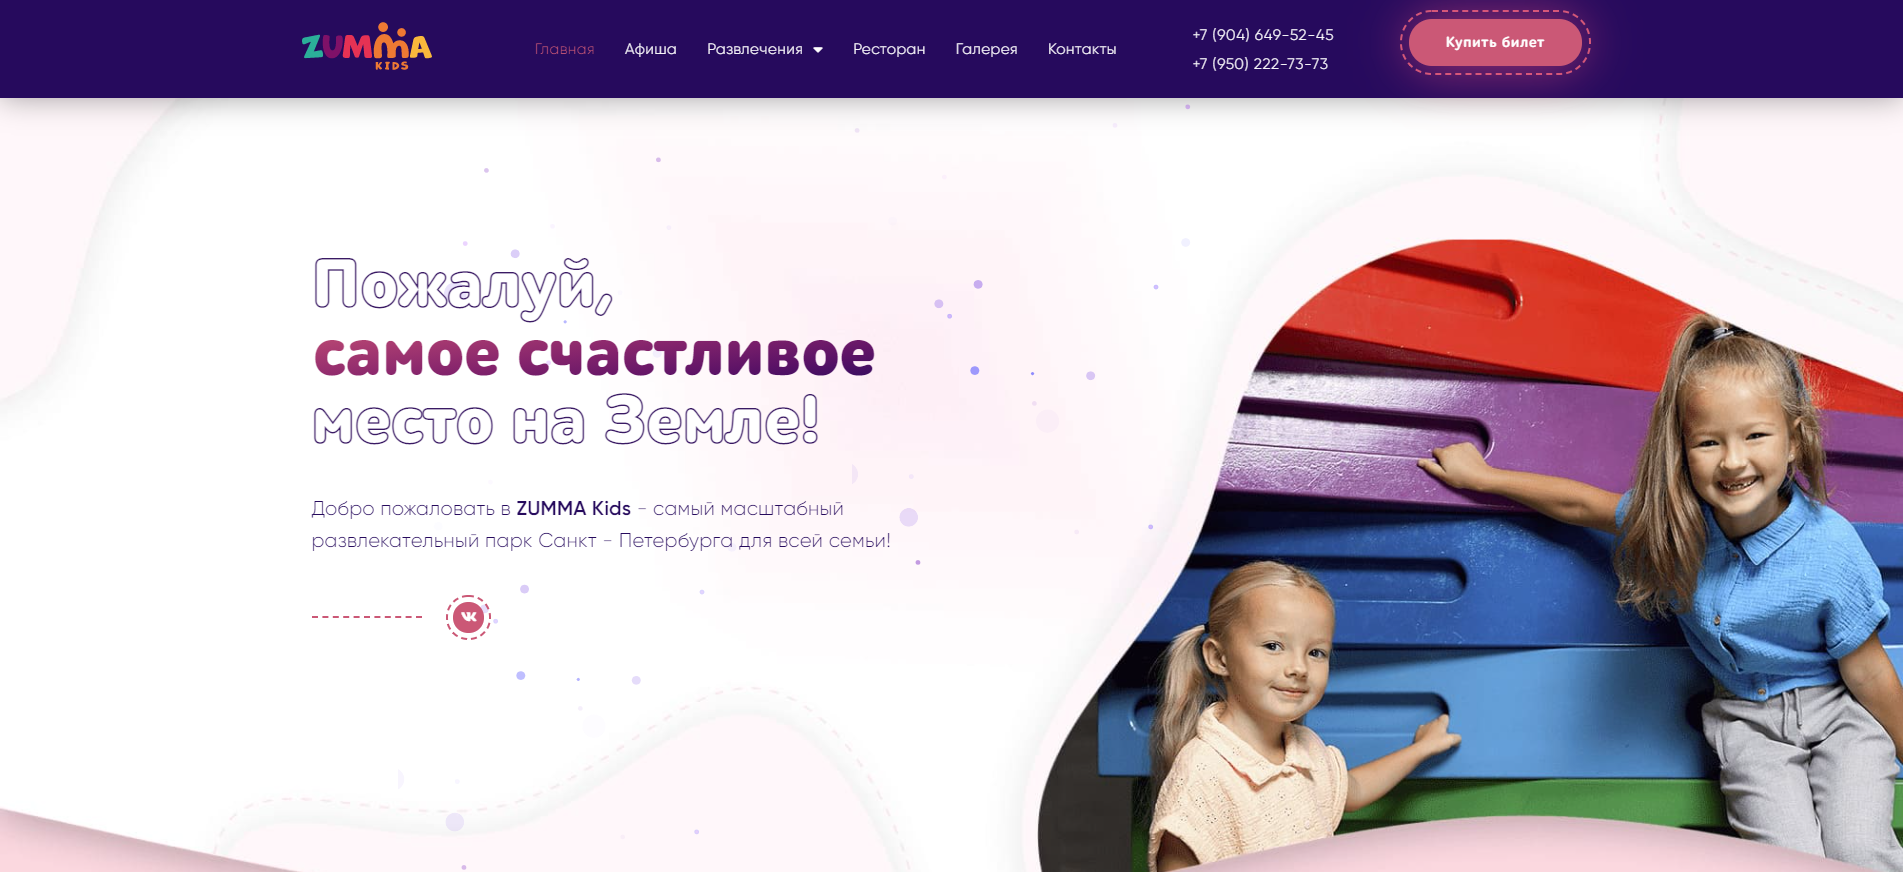 ZUMMA Kids - самый масштабный развлекательный парк Санкт - Петербурга для всей семьи!